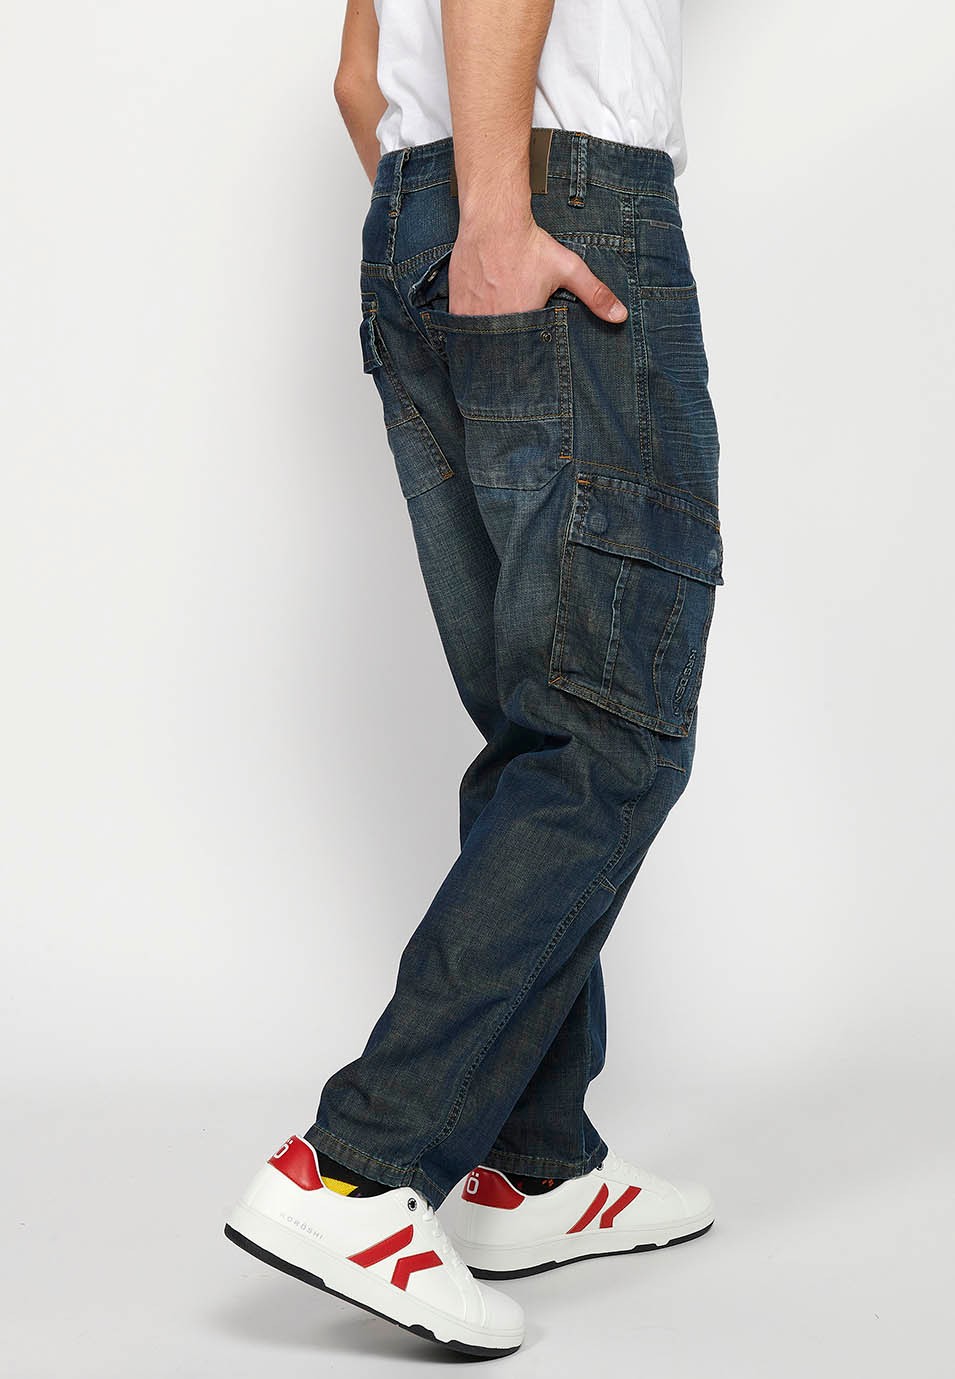 Pantalons càrrec llarg amb Tancament davanter amb cremallera i botó amb Butxaques laterals amb solapa de Color Blau Fosc per a Home 9